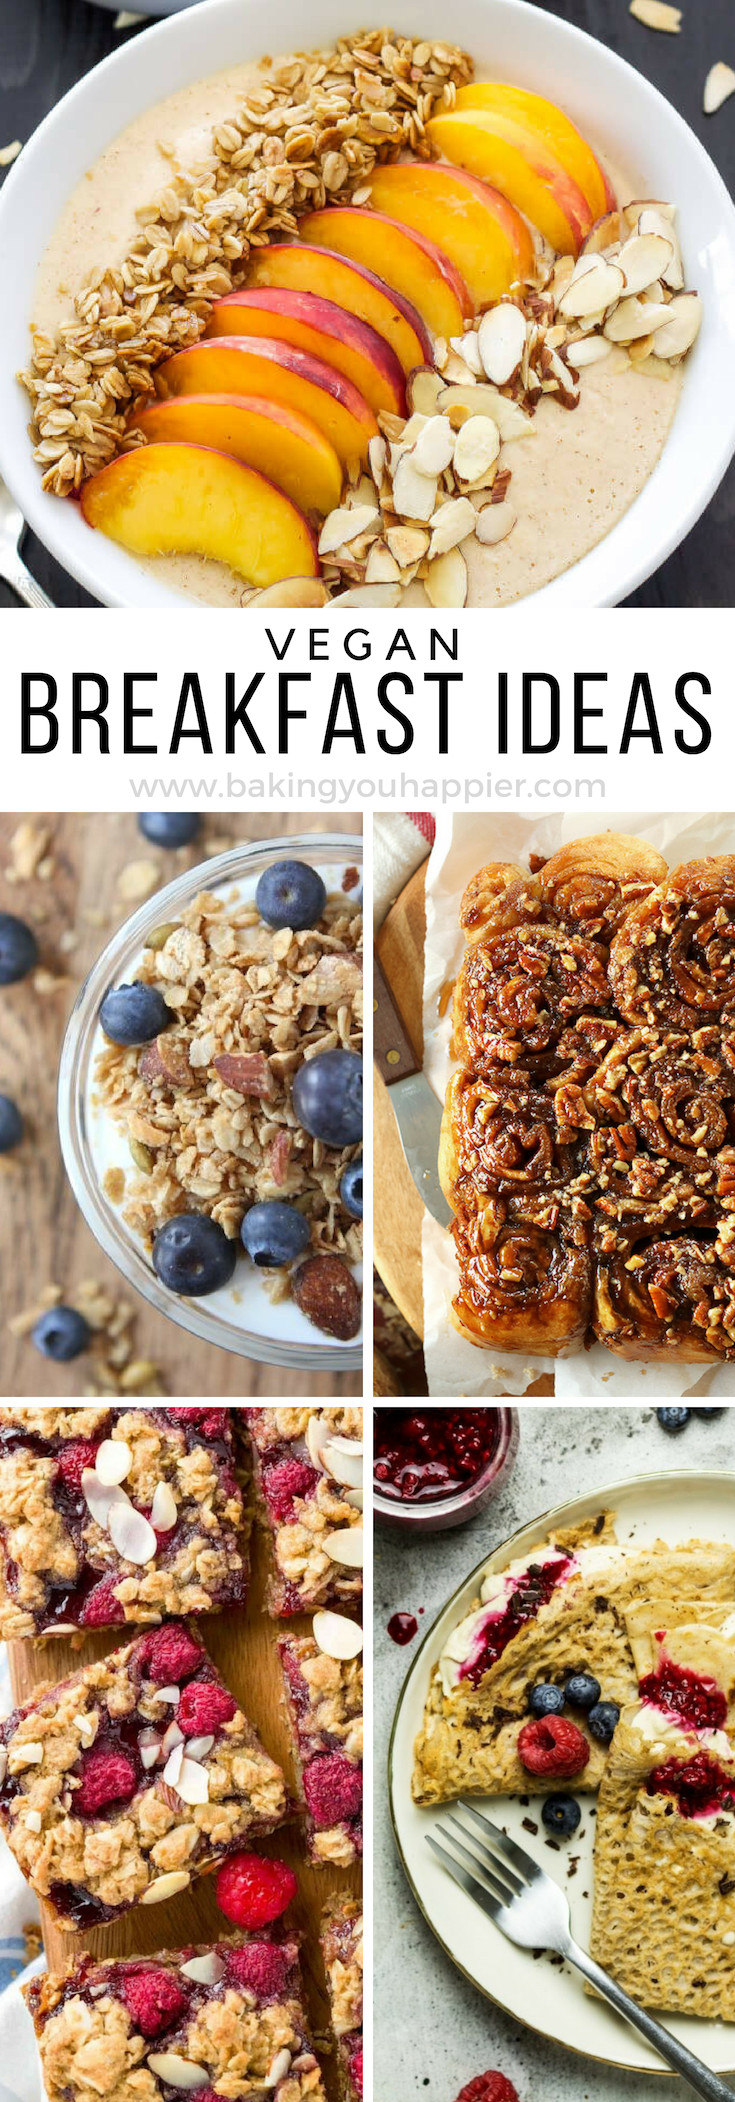 Easy Vegan Breakfast Quick
 Quick and Easy Vegan Breakfast Ideas